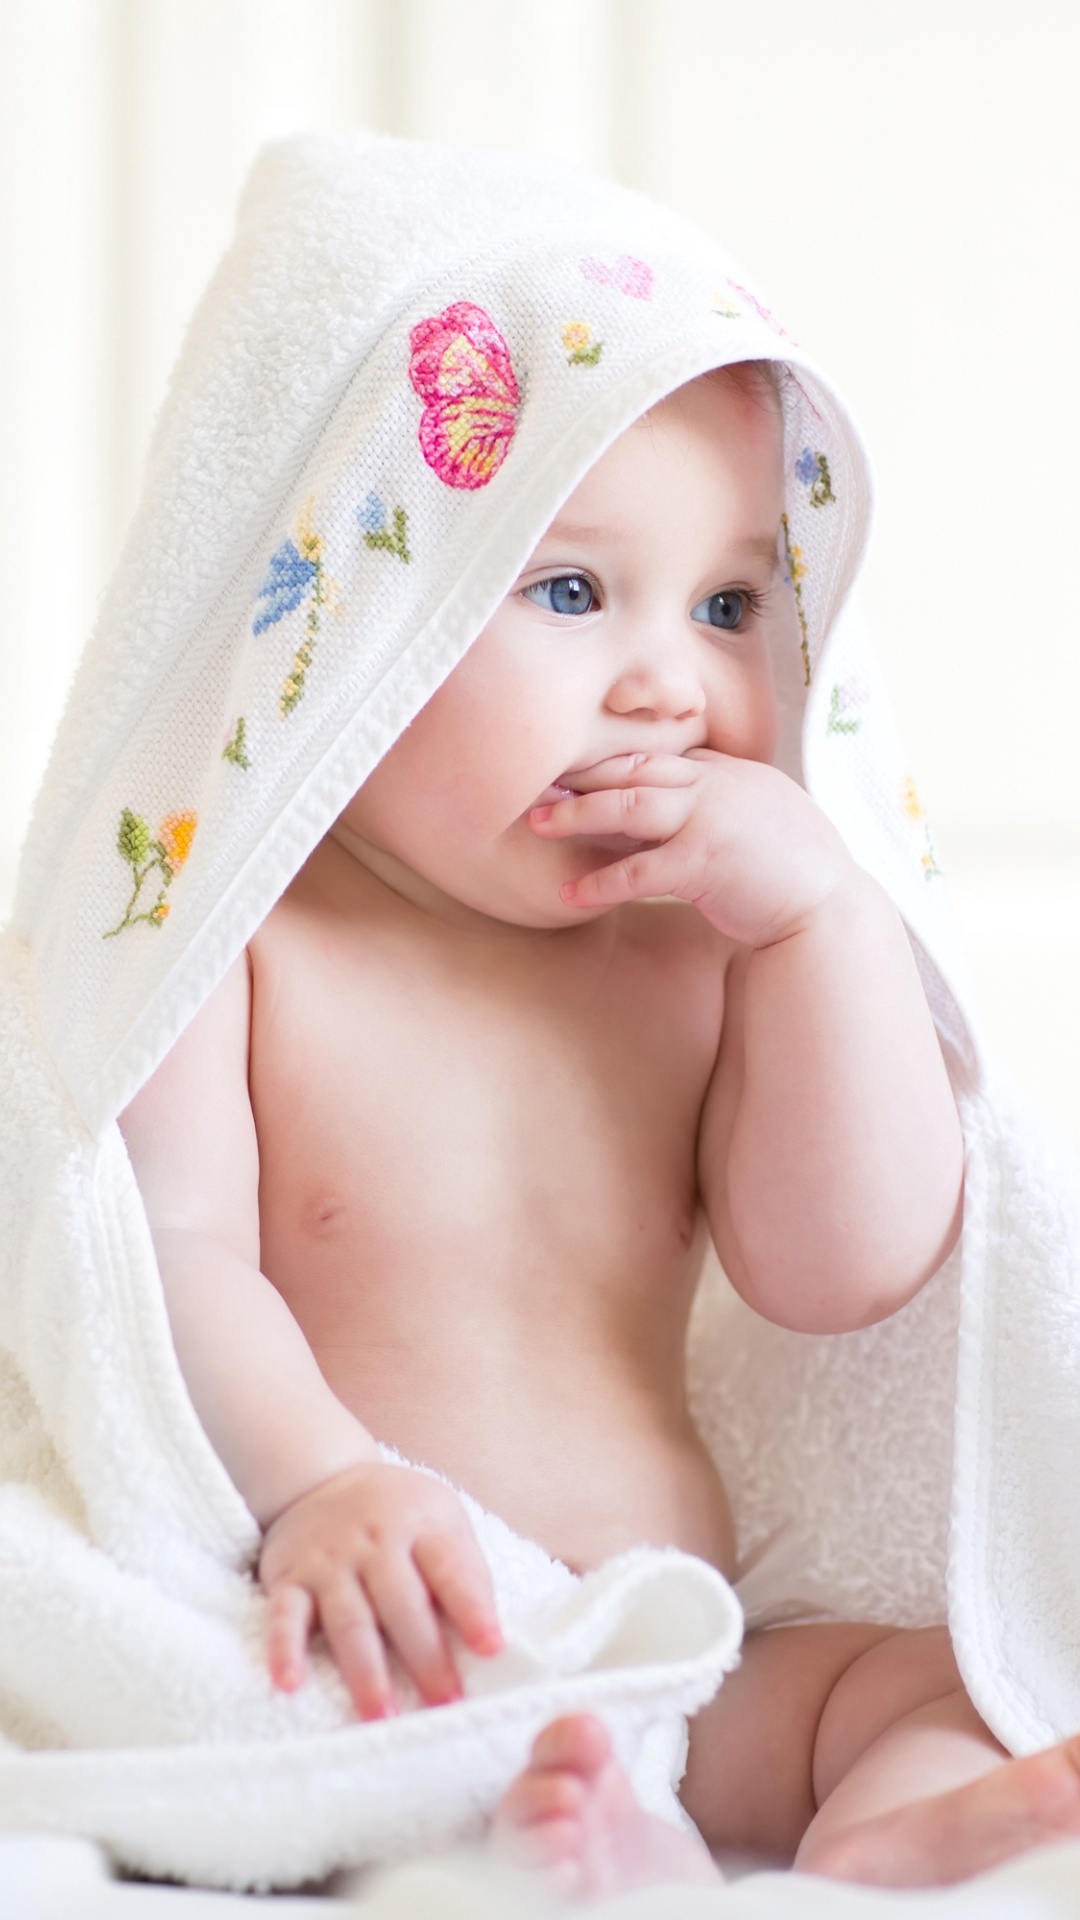 Cute Baby Blanket Wallpapers - 1080x1920 - 348259